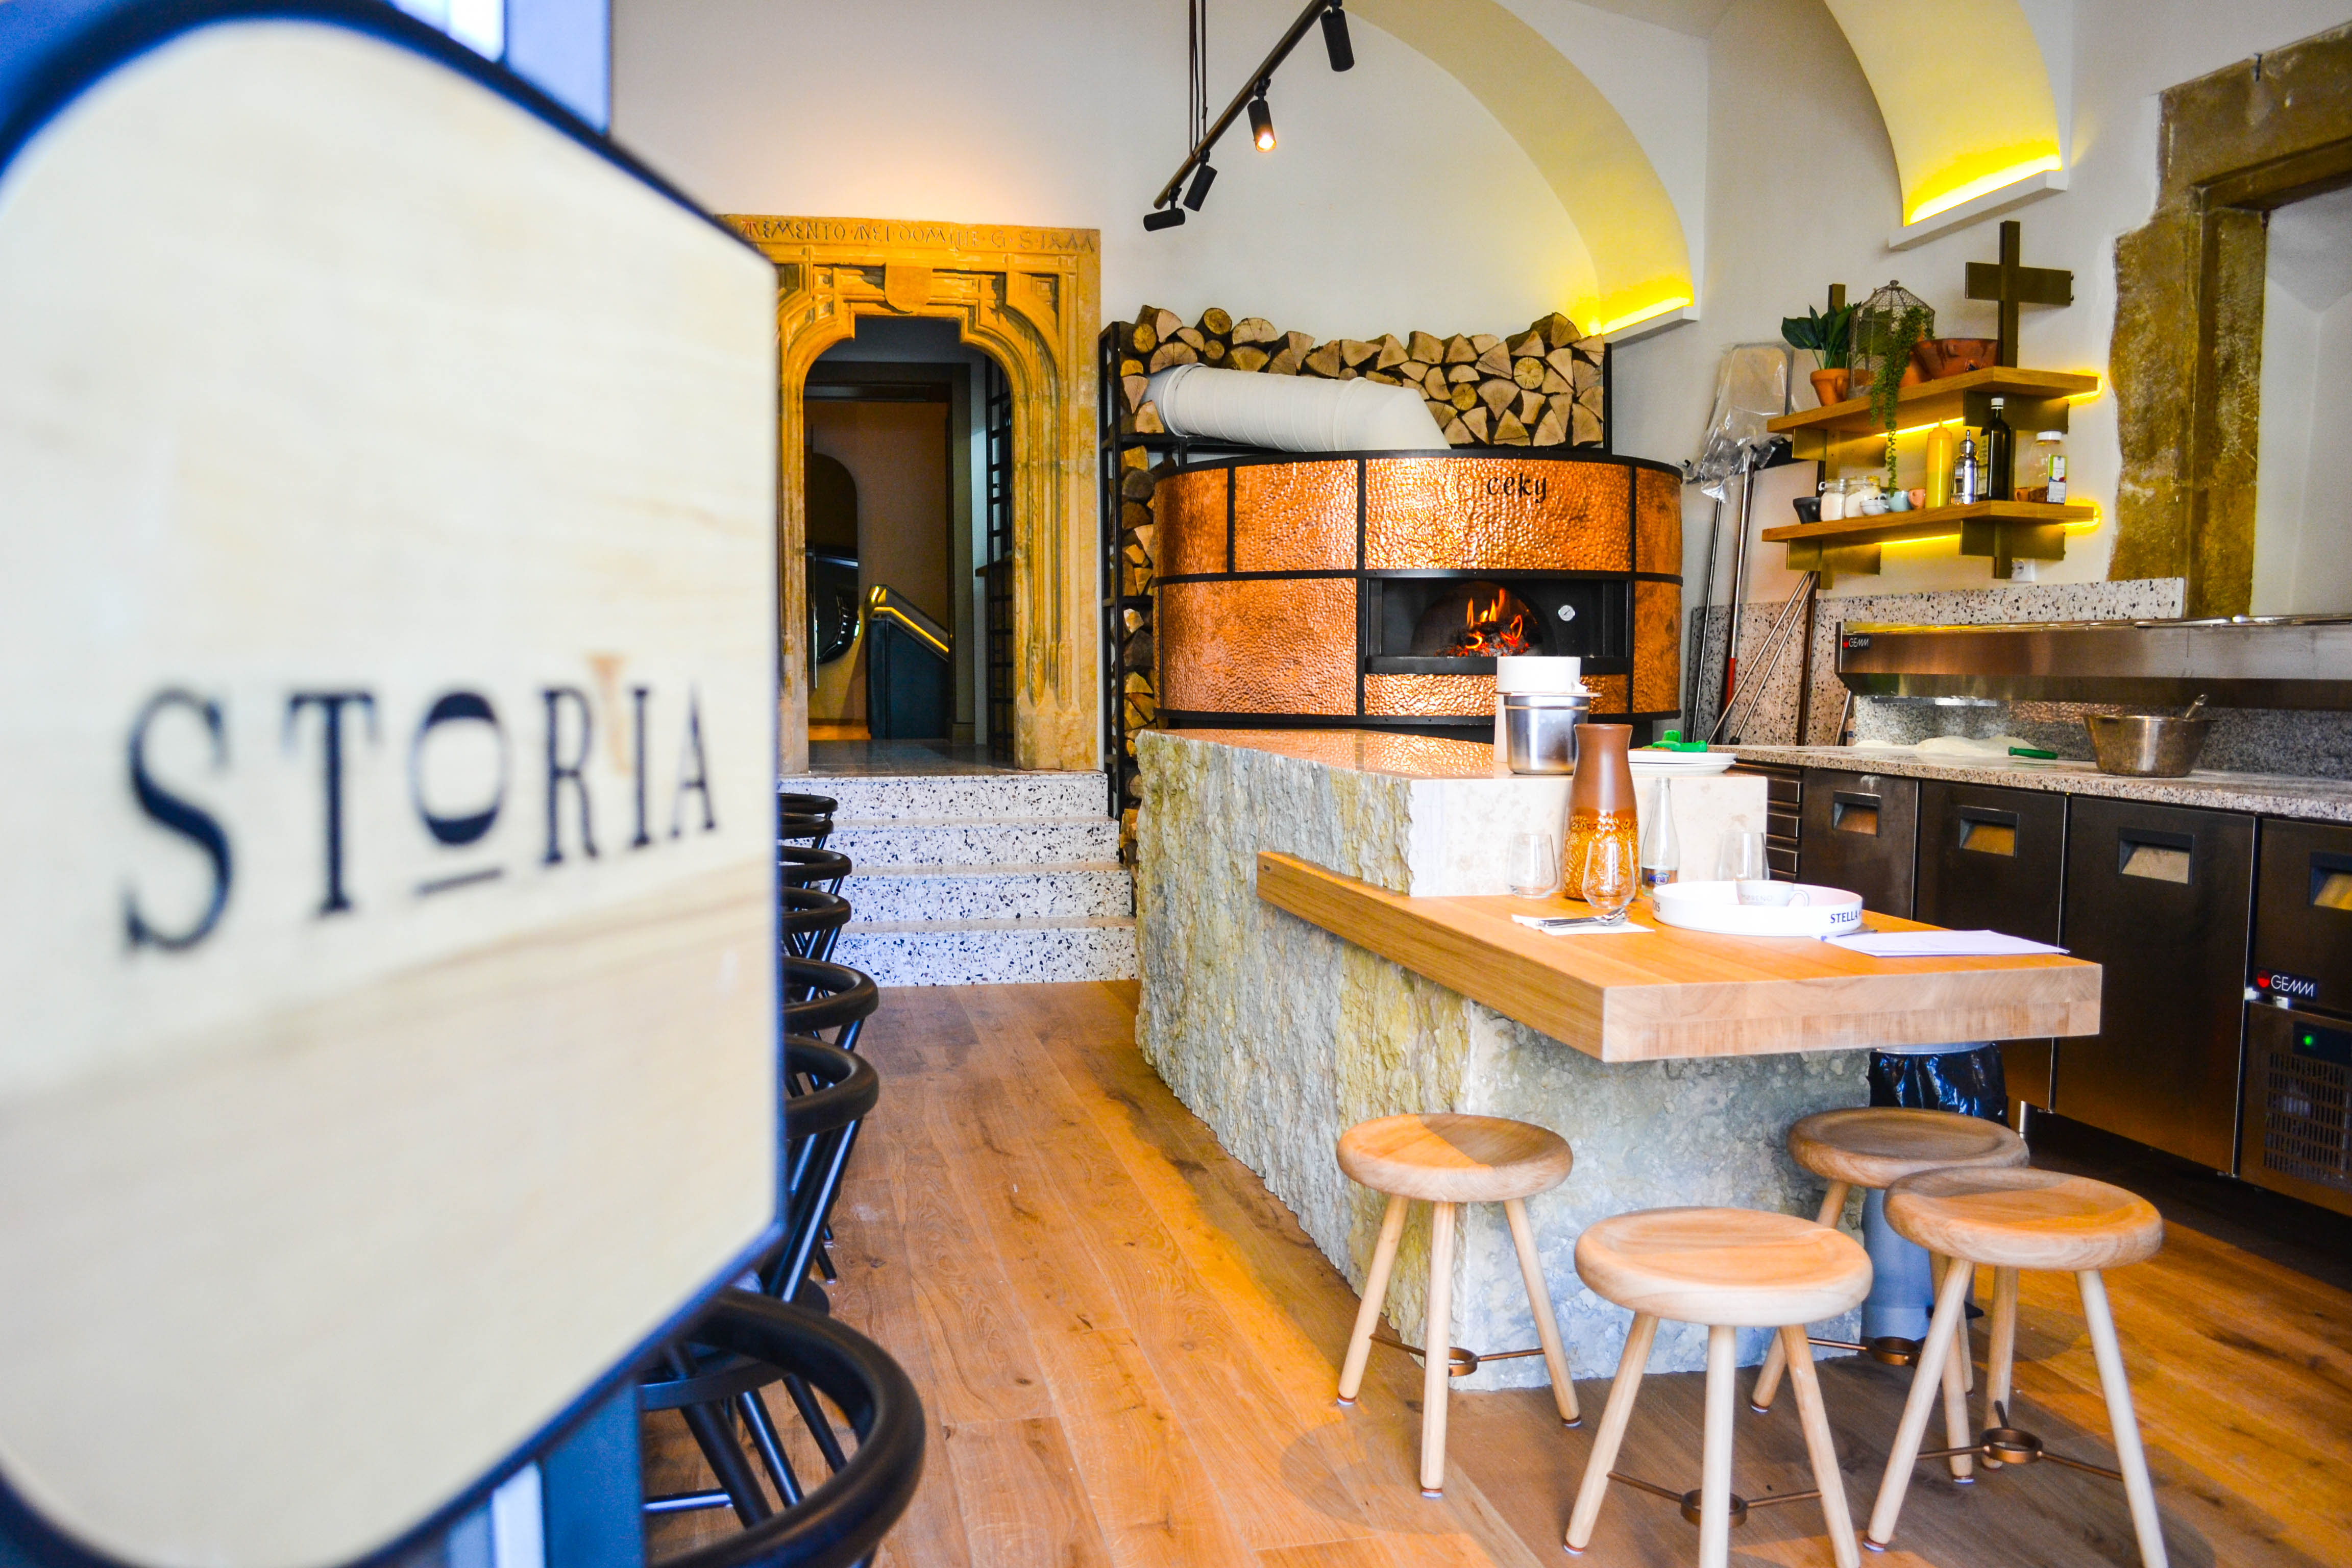 FOTO Fosta cafenea Diesel a devenit tratorie italiană cu poveste. Noul local, Storia, deschis oficial